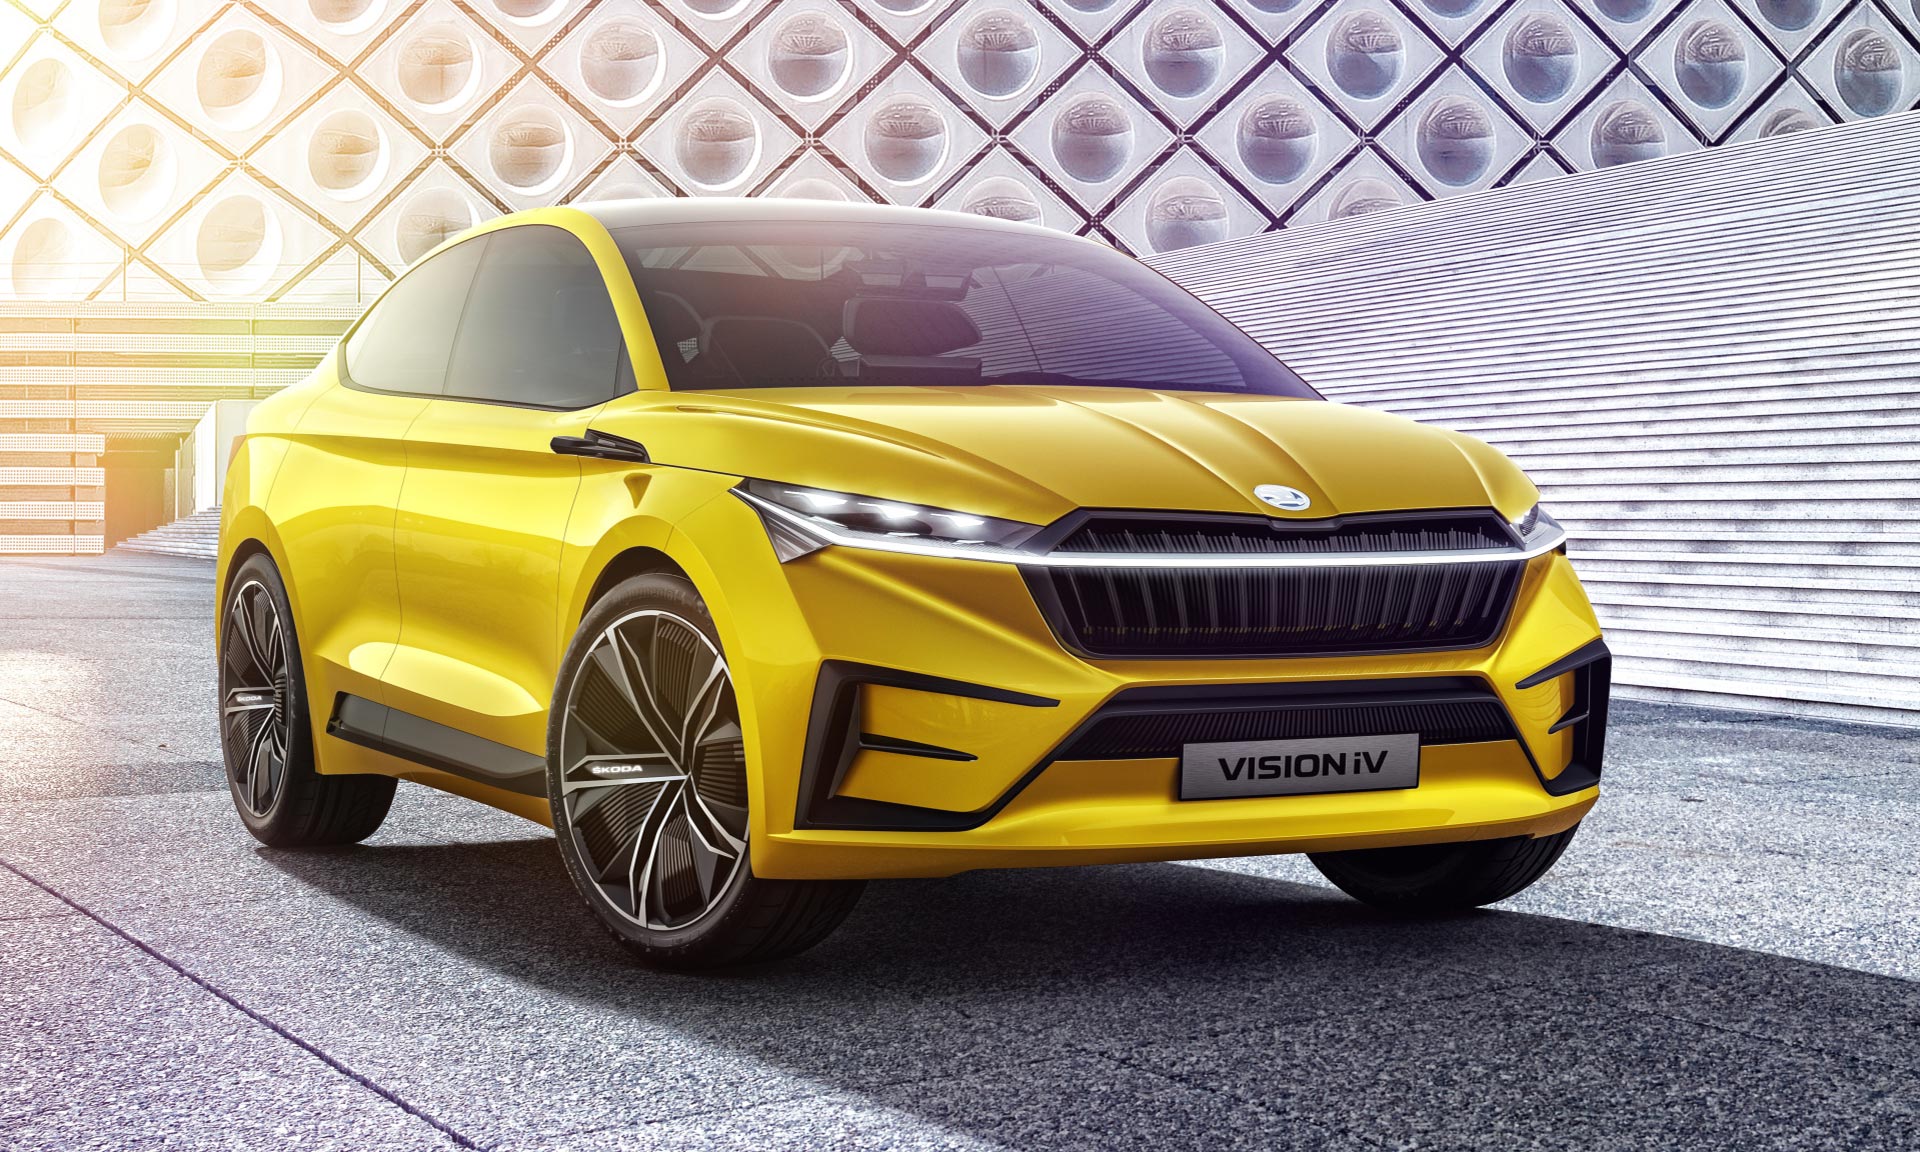 Škoda představila čtyřdveřový plně elektrický koncept crossoveru Vision iV